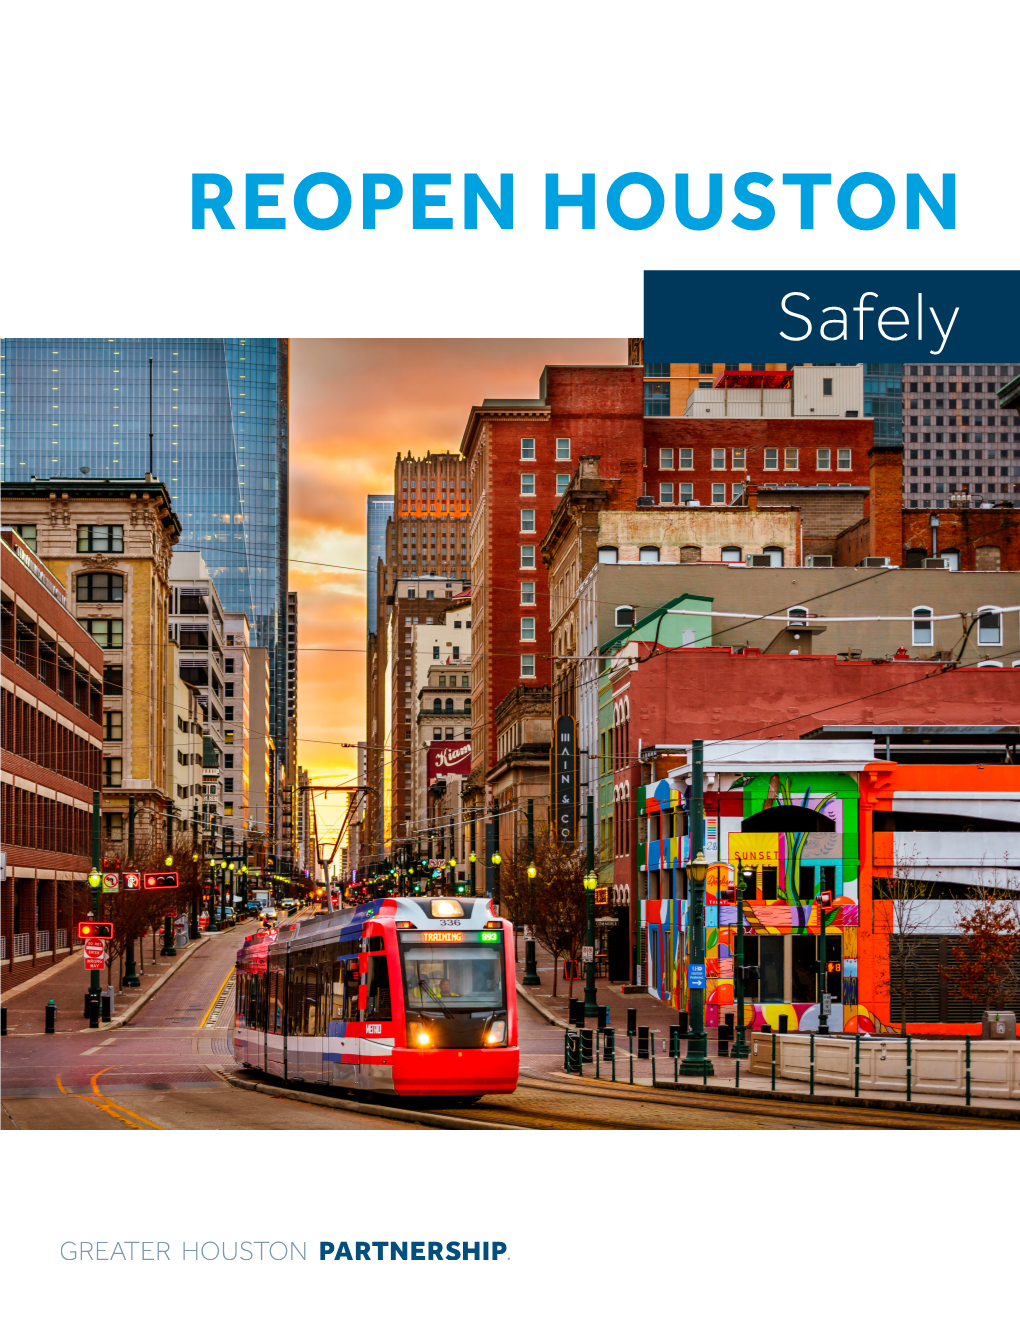 REOPEN HOUSTON Safely Reopen Houston Safely